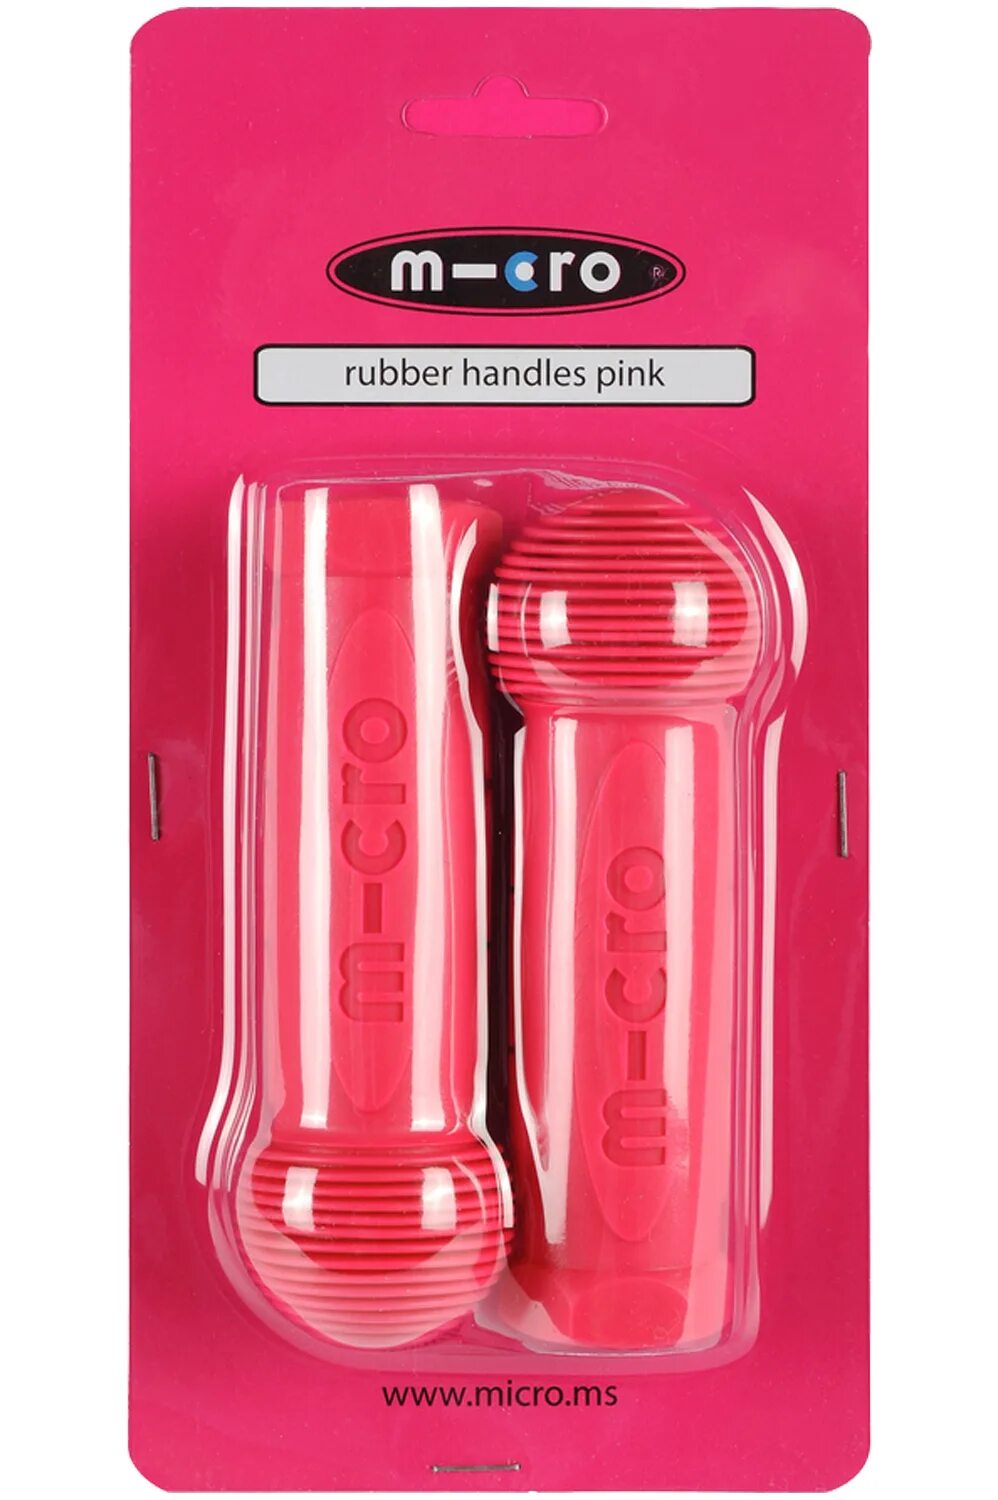 Микро ручка. Грипсы для самоката Micro. Ручки для самоката Micro Mini. Грипсы для самоката Micro Maxi. Ручка на Micro Maxi.